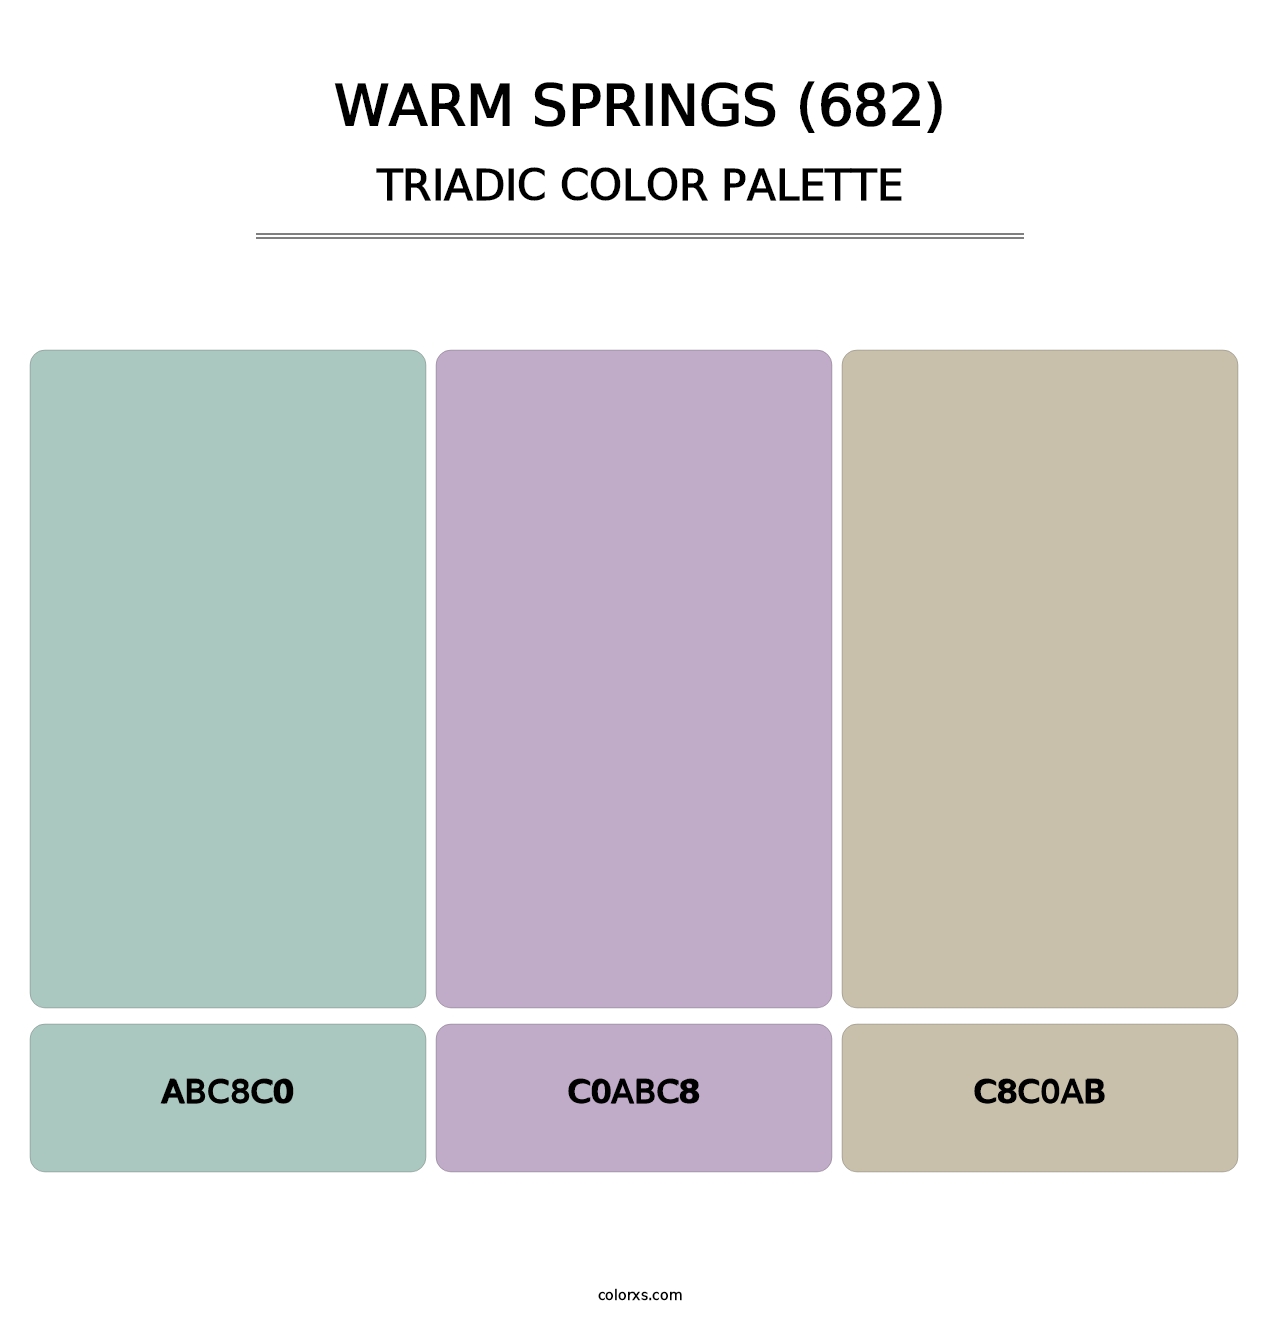 Warm Springs (682) - Triadic Color Palette